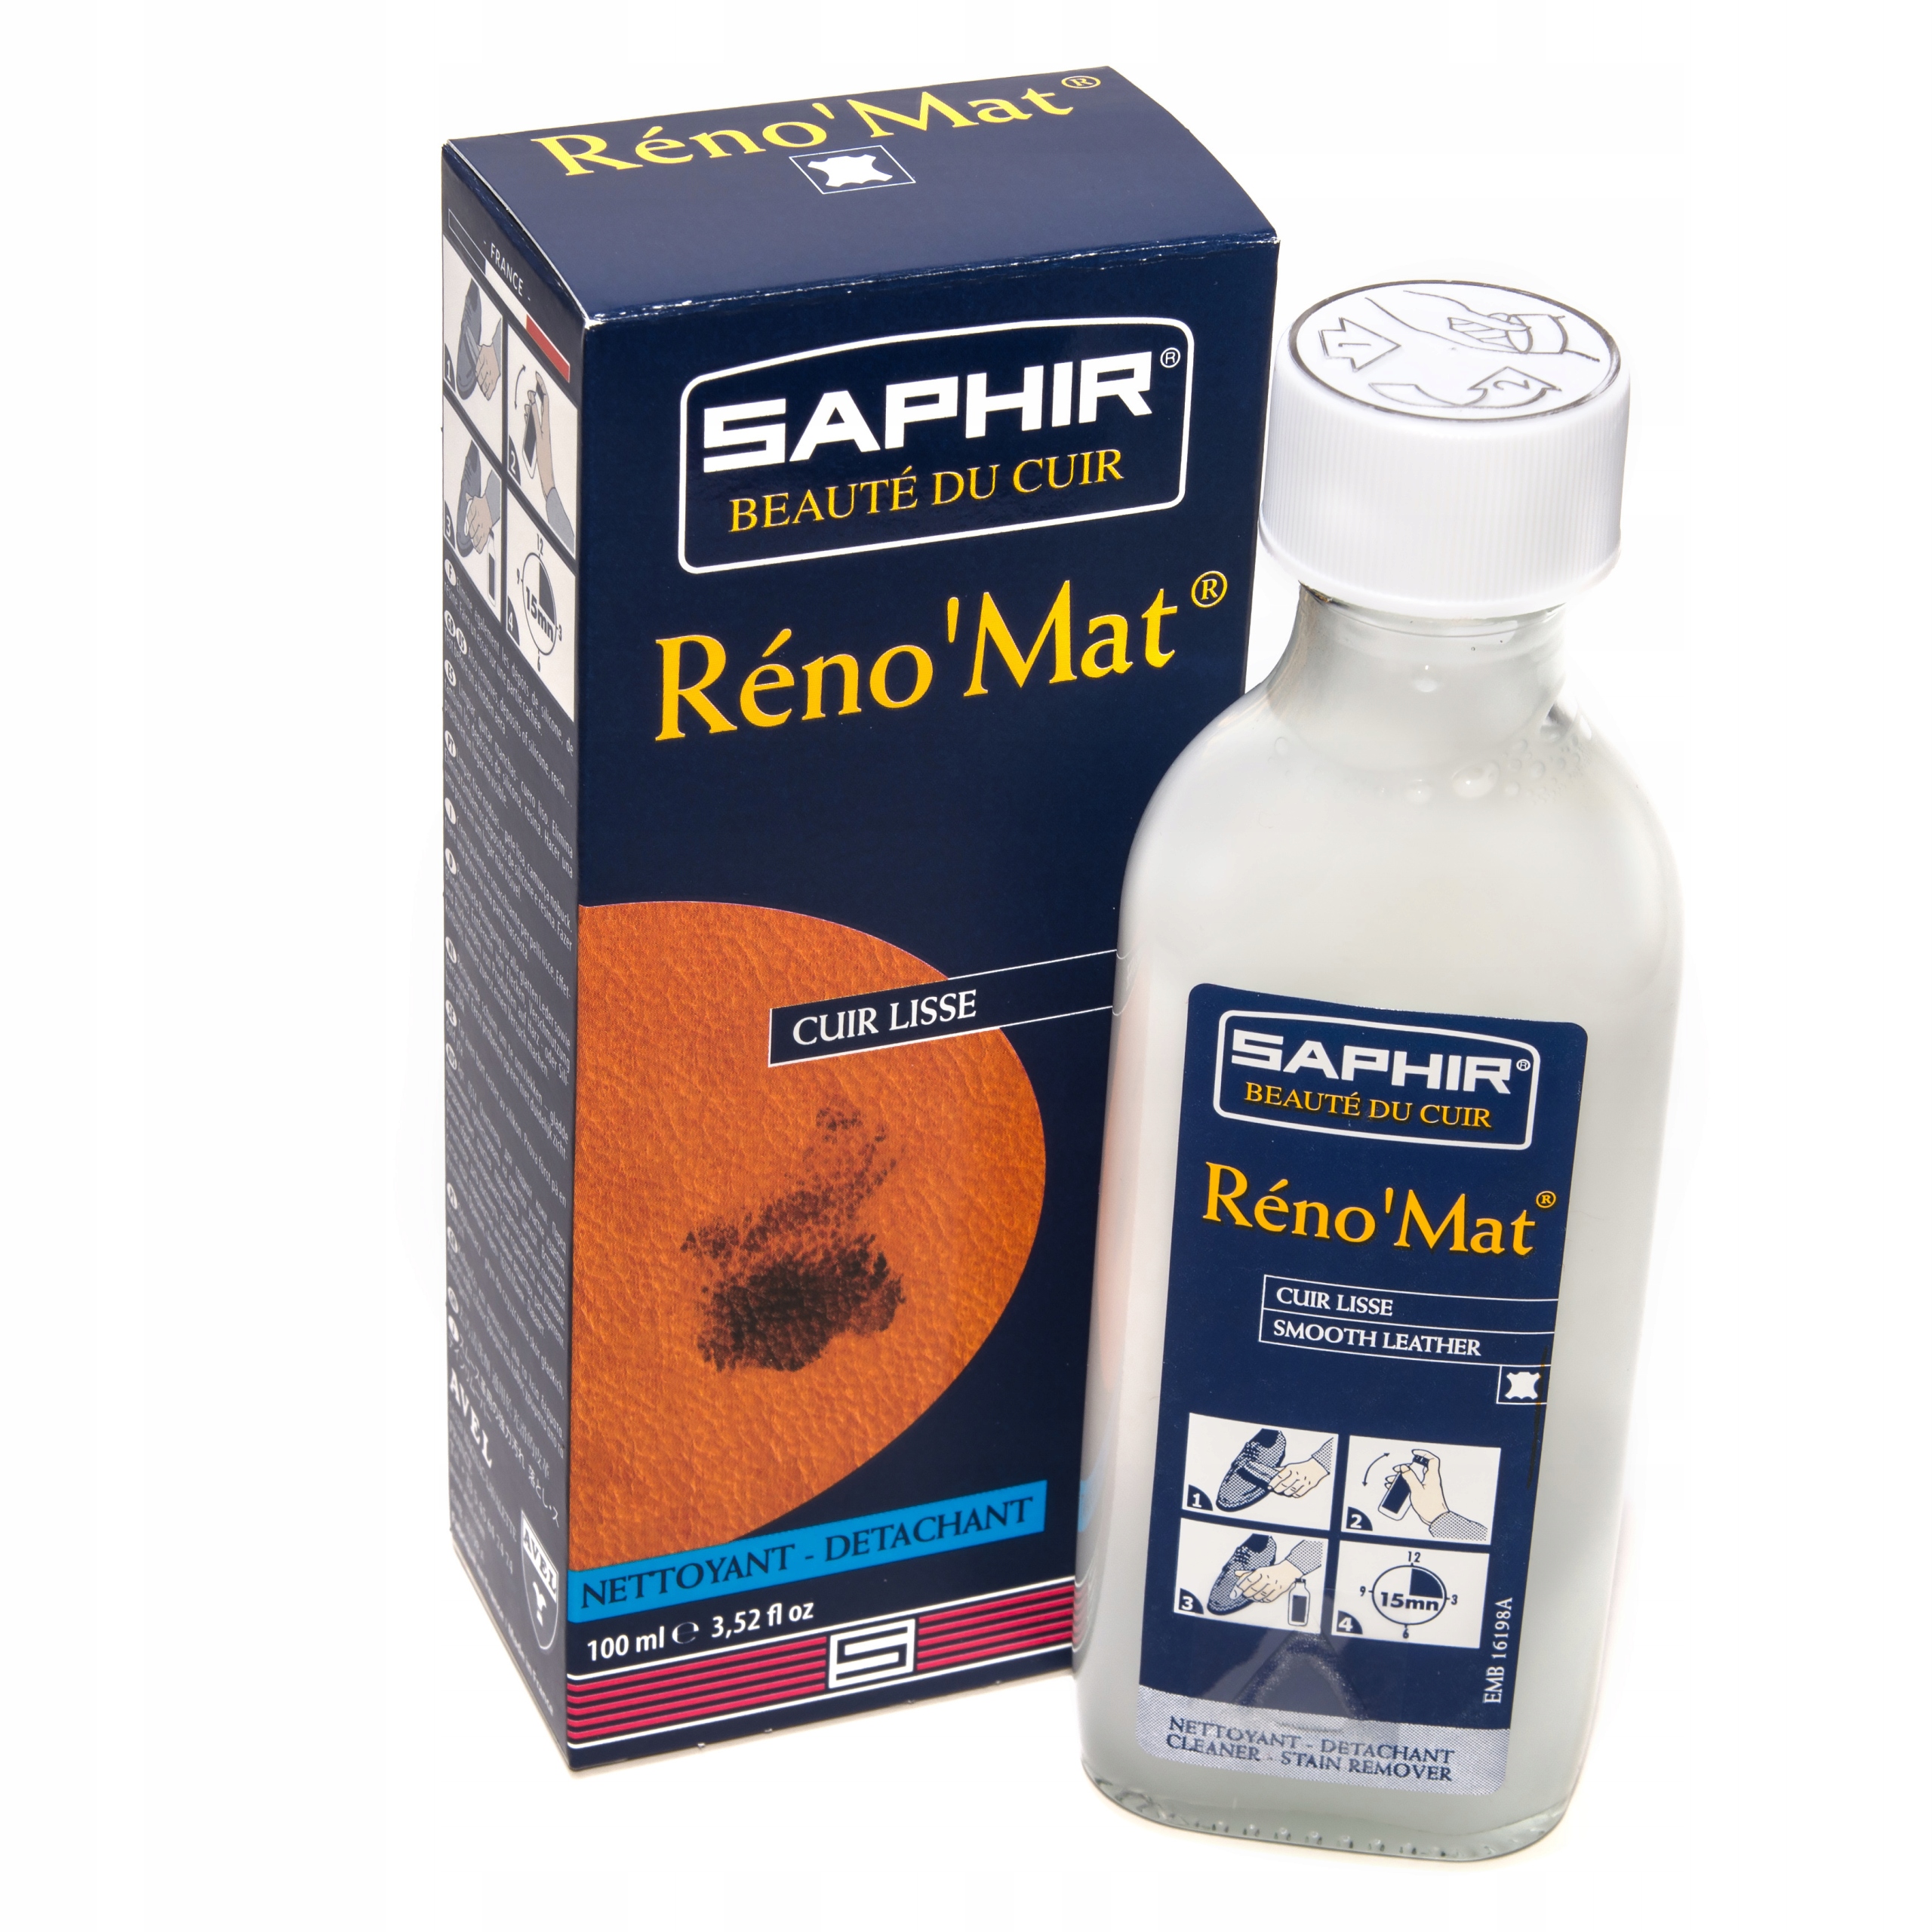 Reno mat. Очиститель реномат сапфир. Saphir Reno mat. Сапфир реномат для обуви. Пропитка Saphir Reno mat.